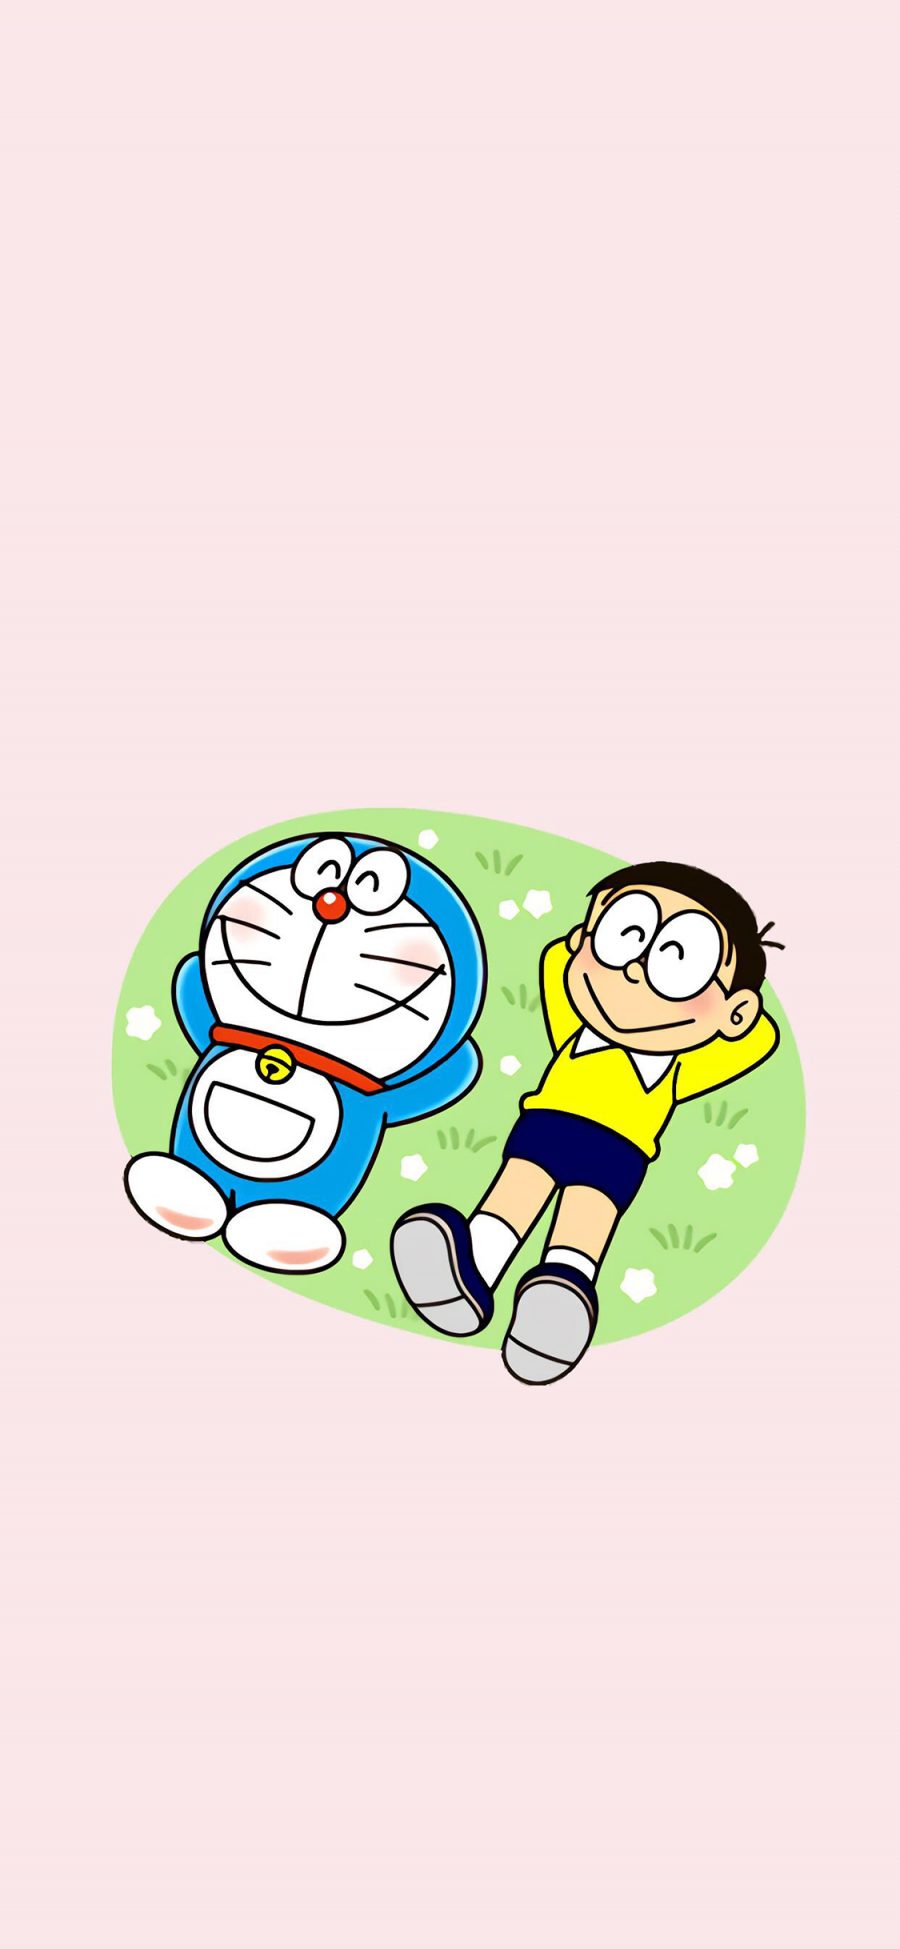 [2436×1125]哆啦A梦 大雄 叮当猫 动画 粉色 苹果手机动漫壁纸图片